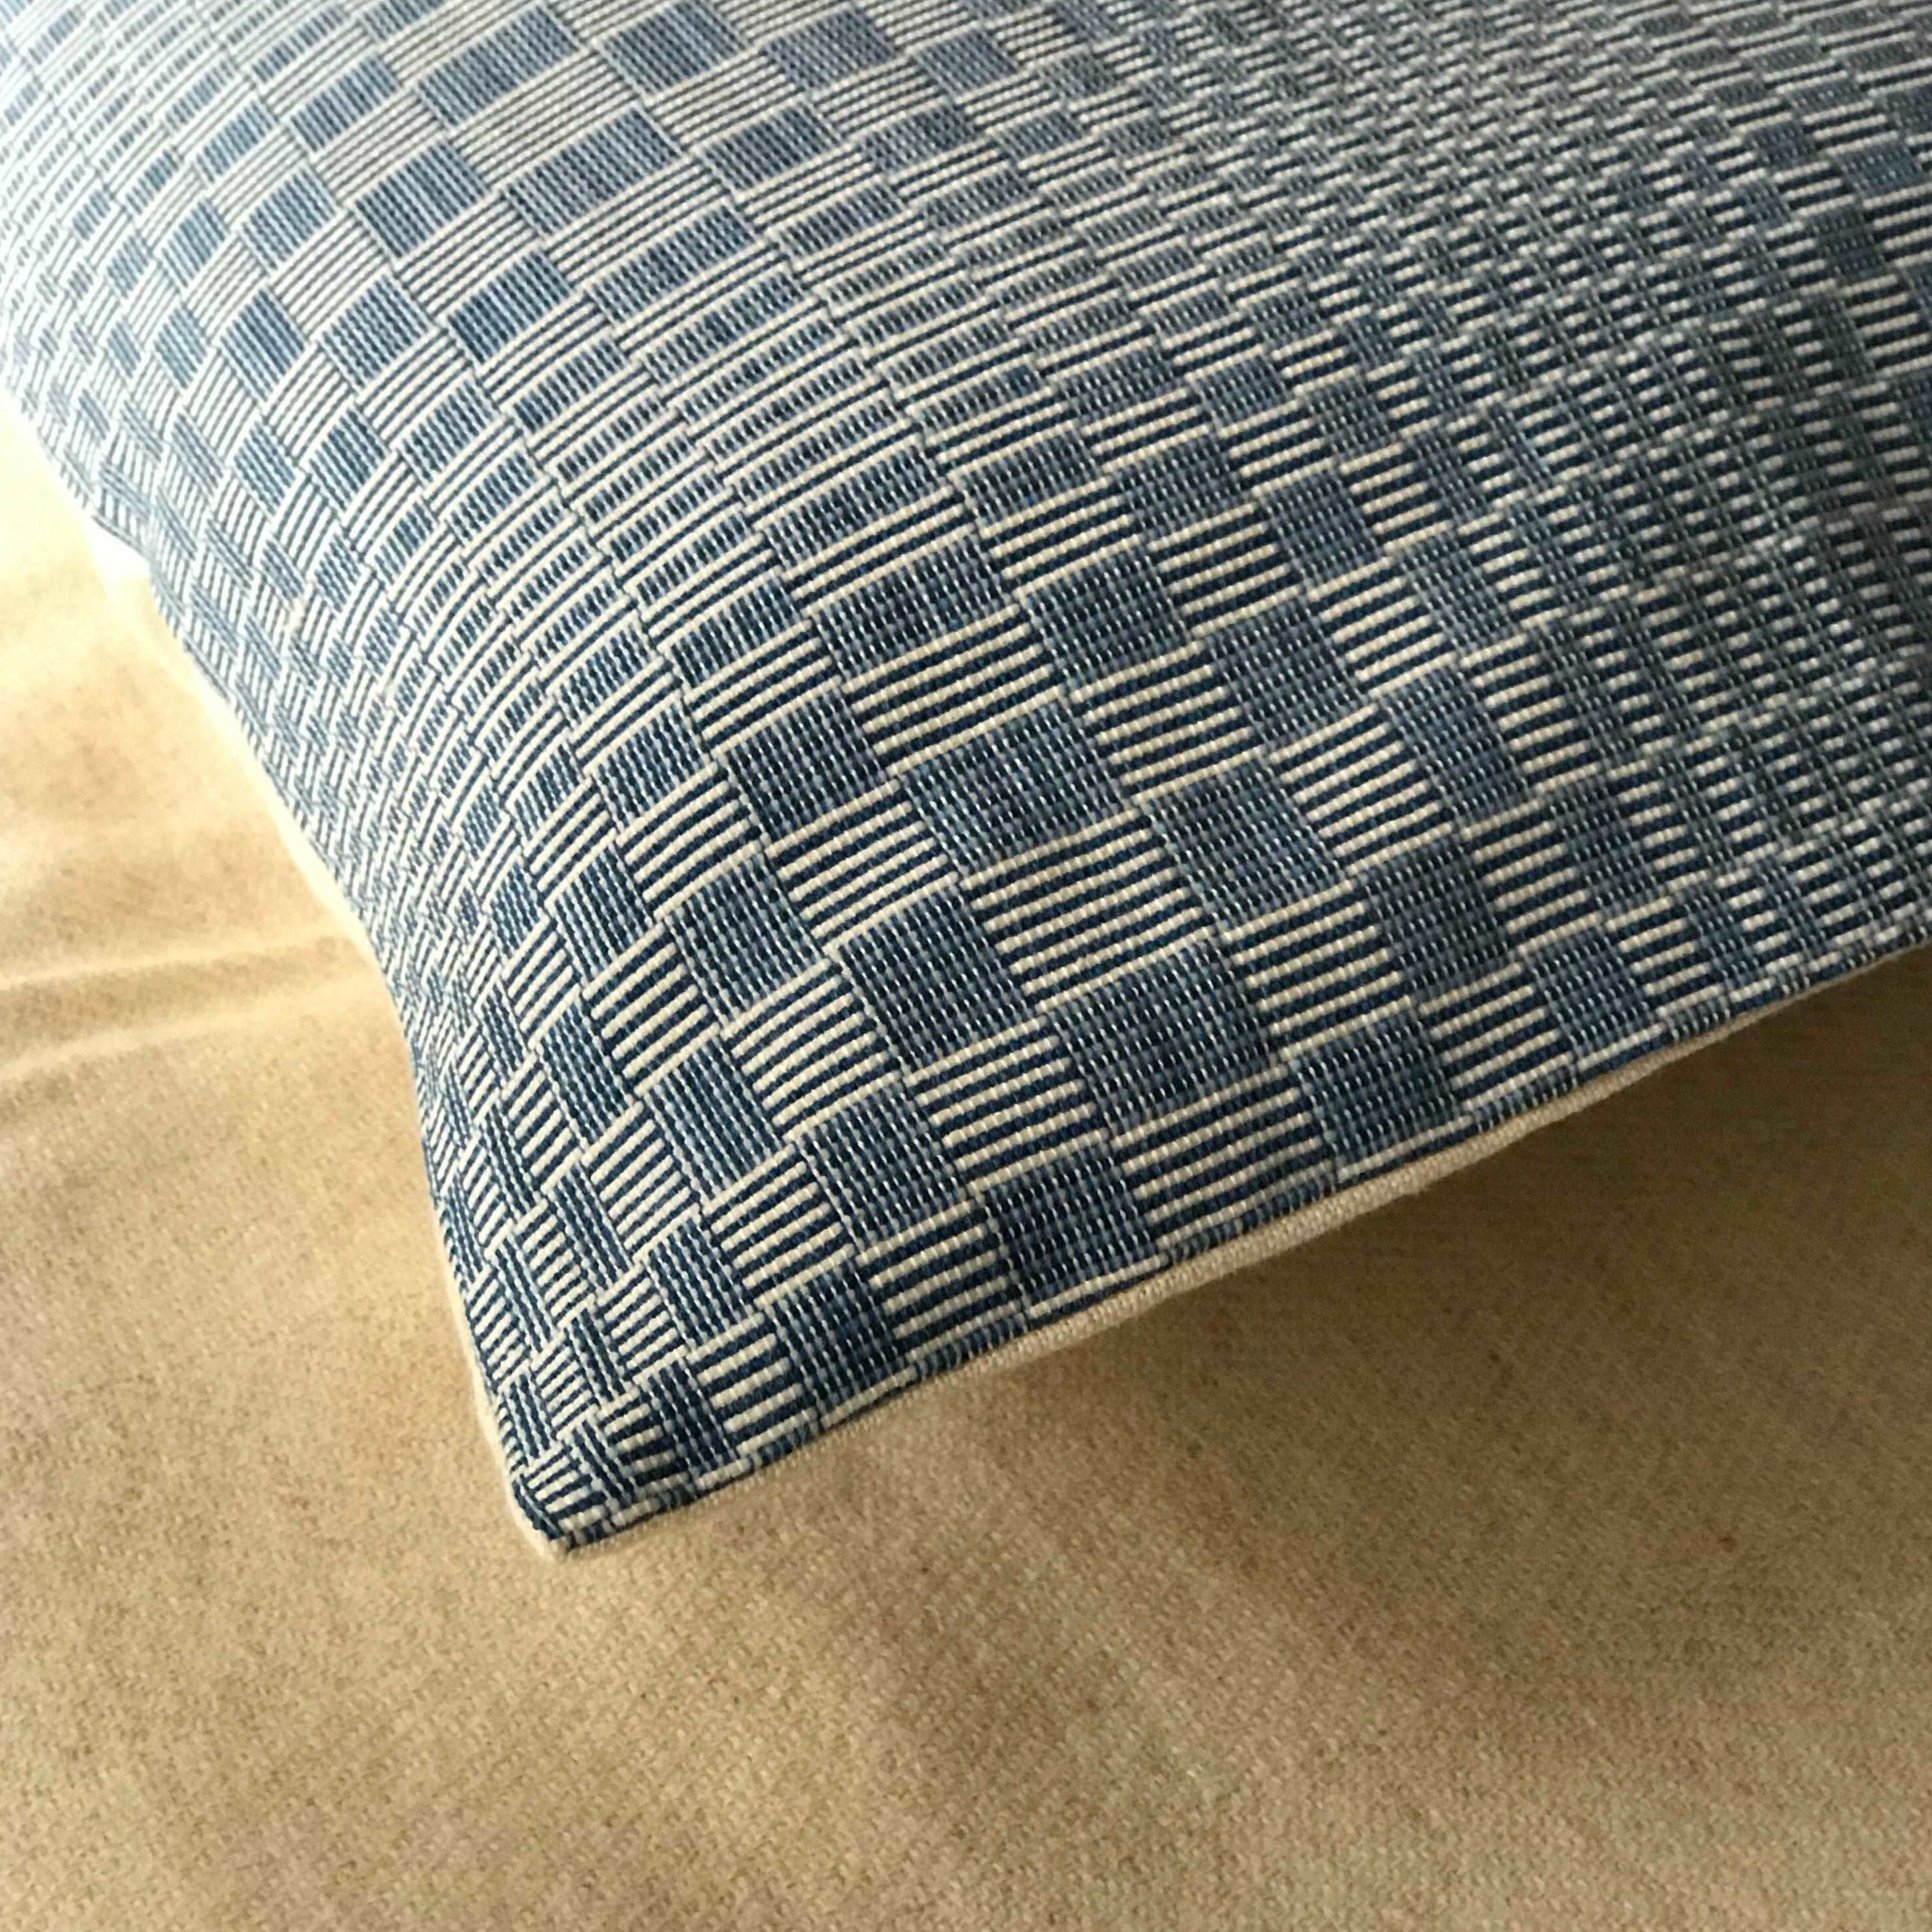 Hand loomed cushion cover, rare Binakol weave